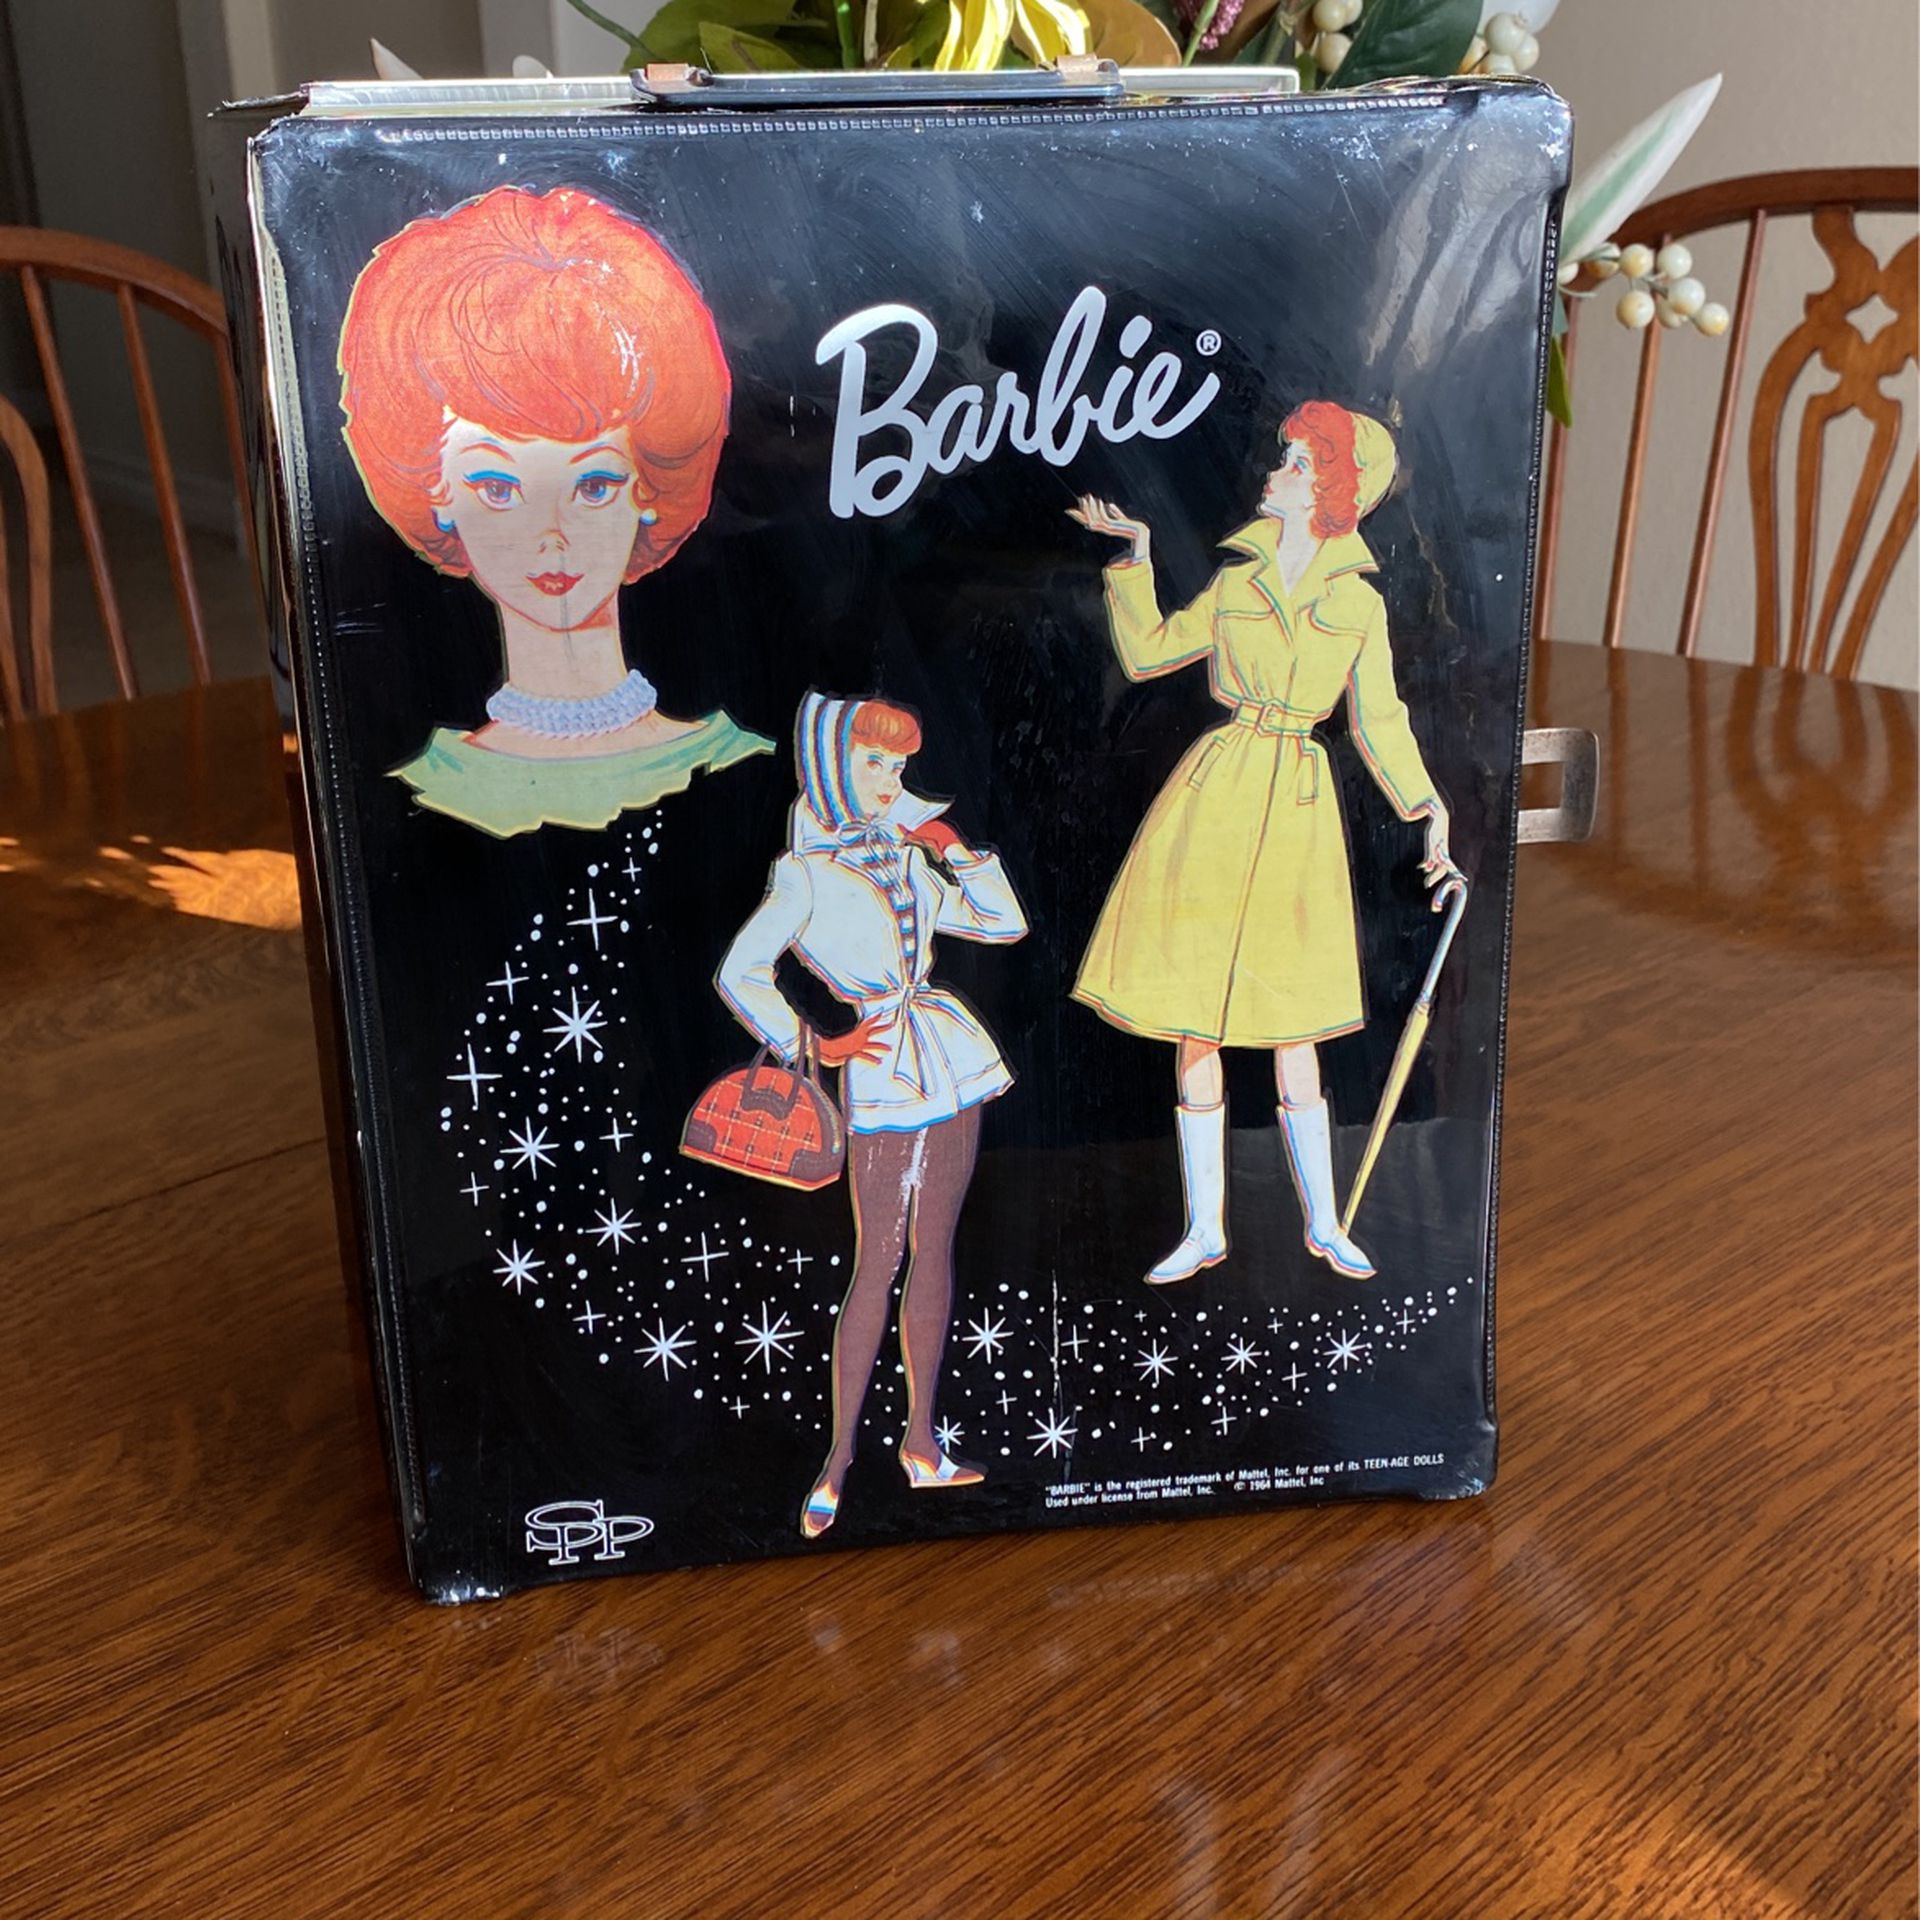 Original 1964. Barbie Trunk In Good Condition 